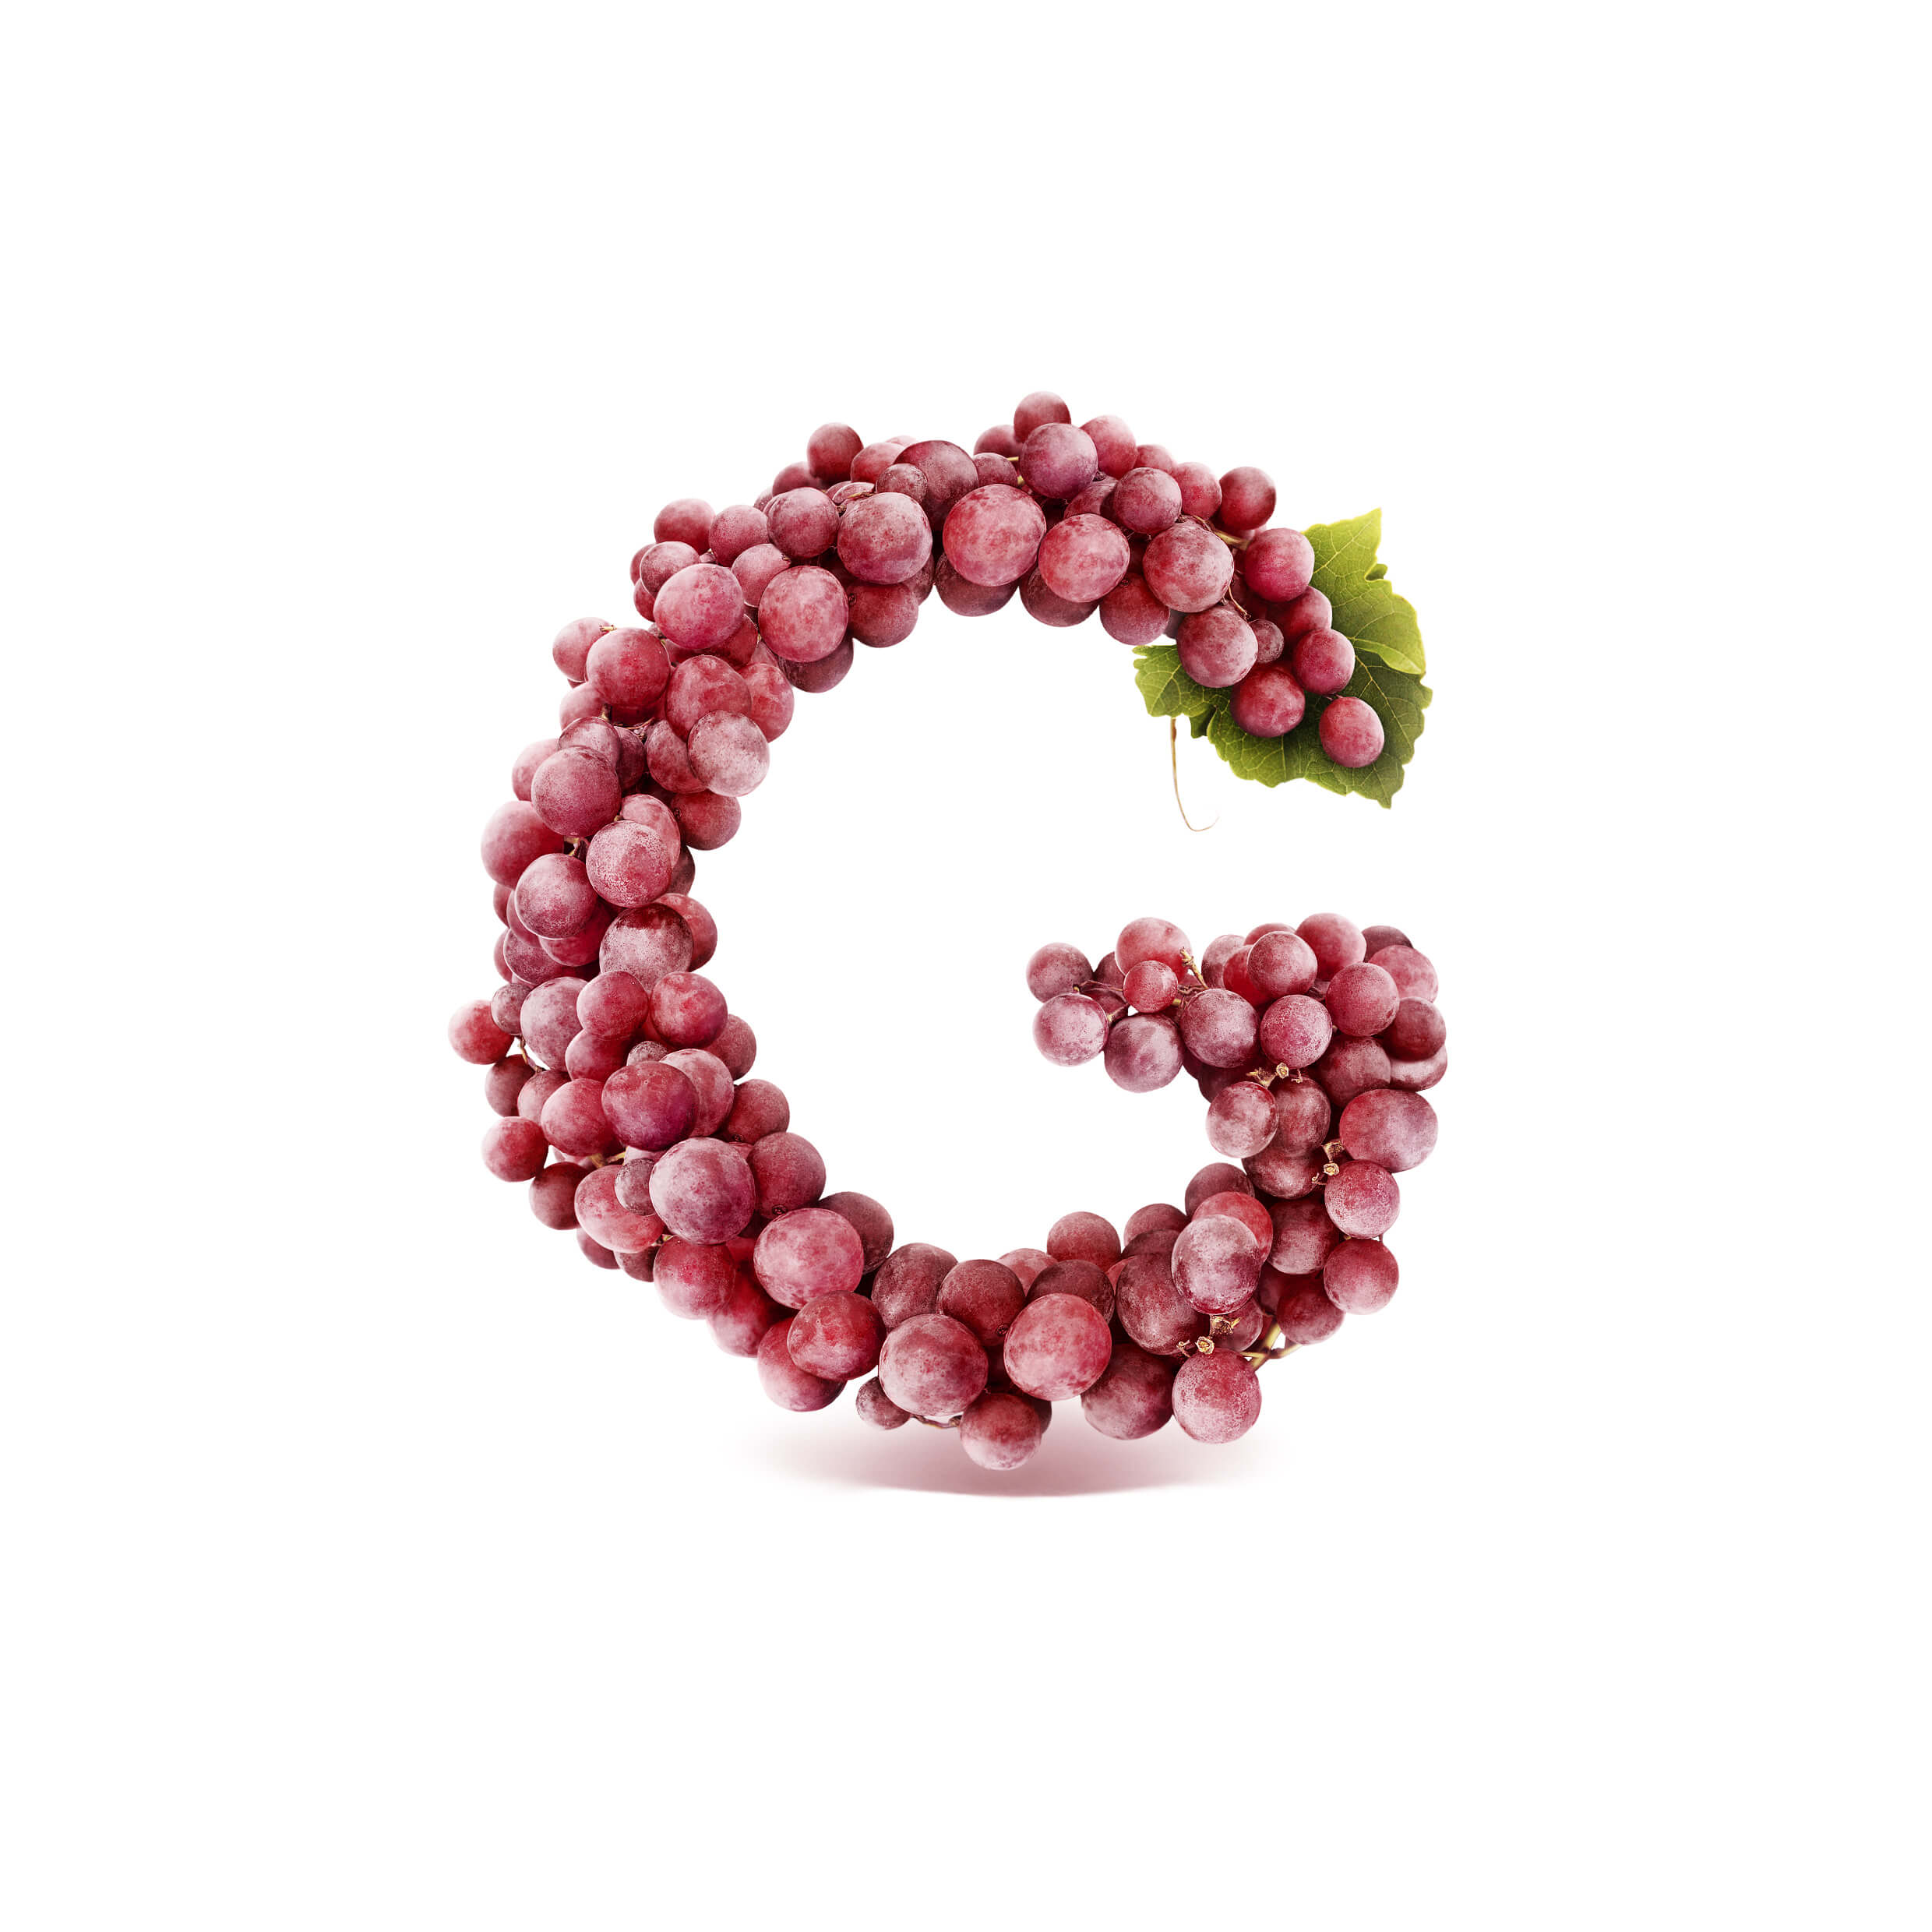 G_Grapes